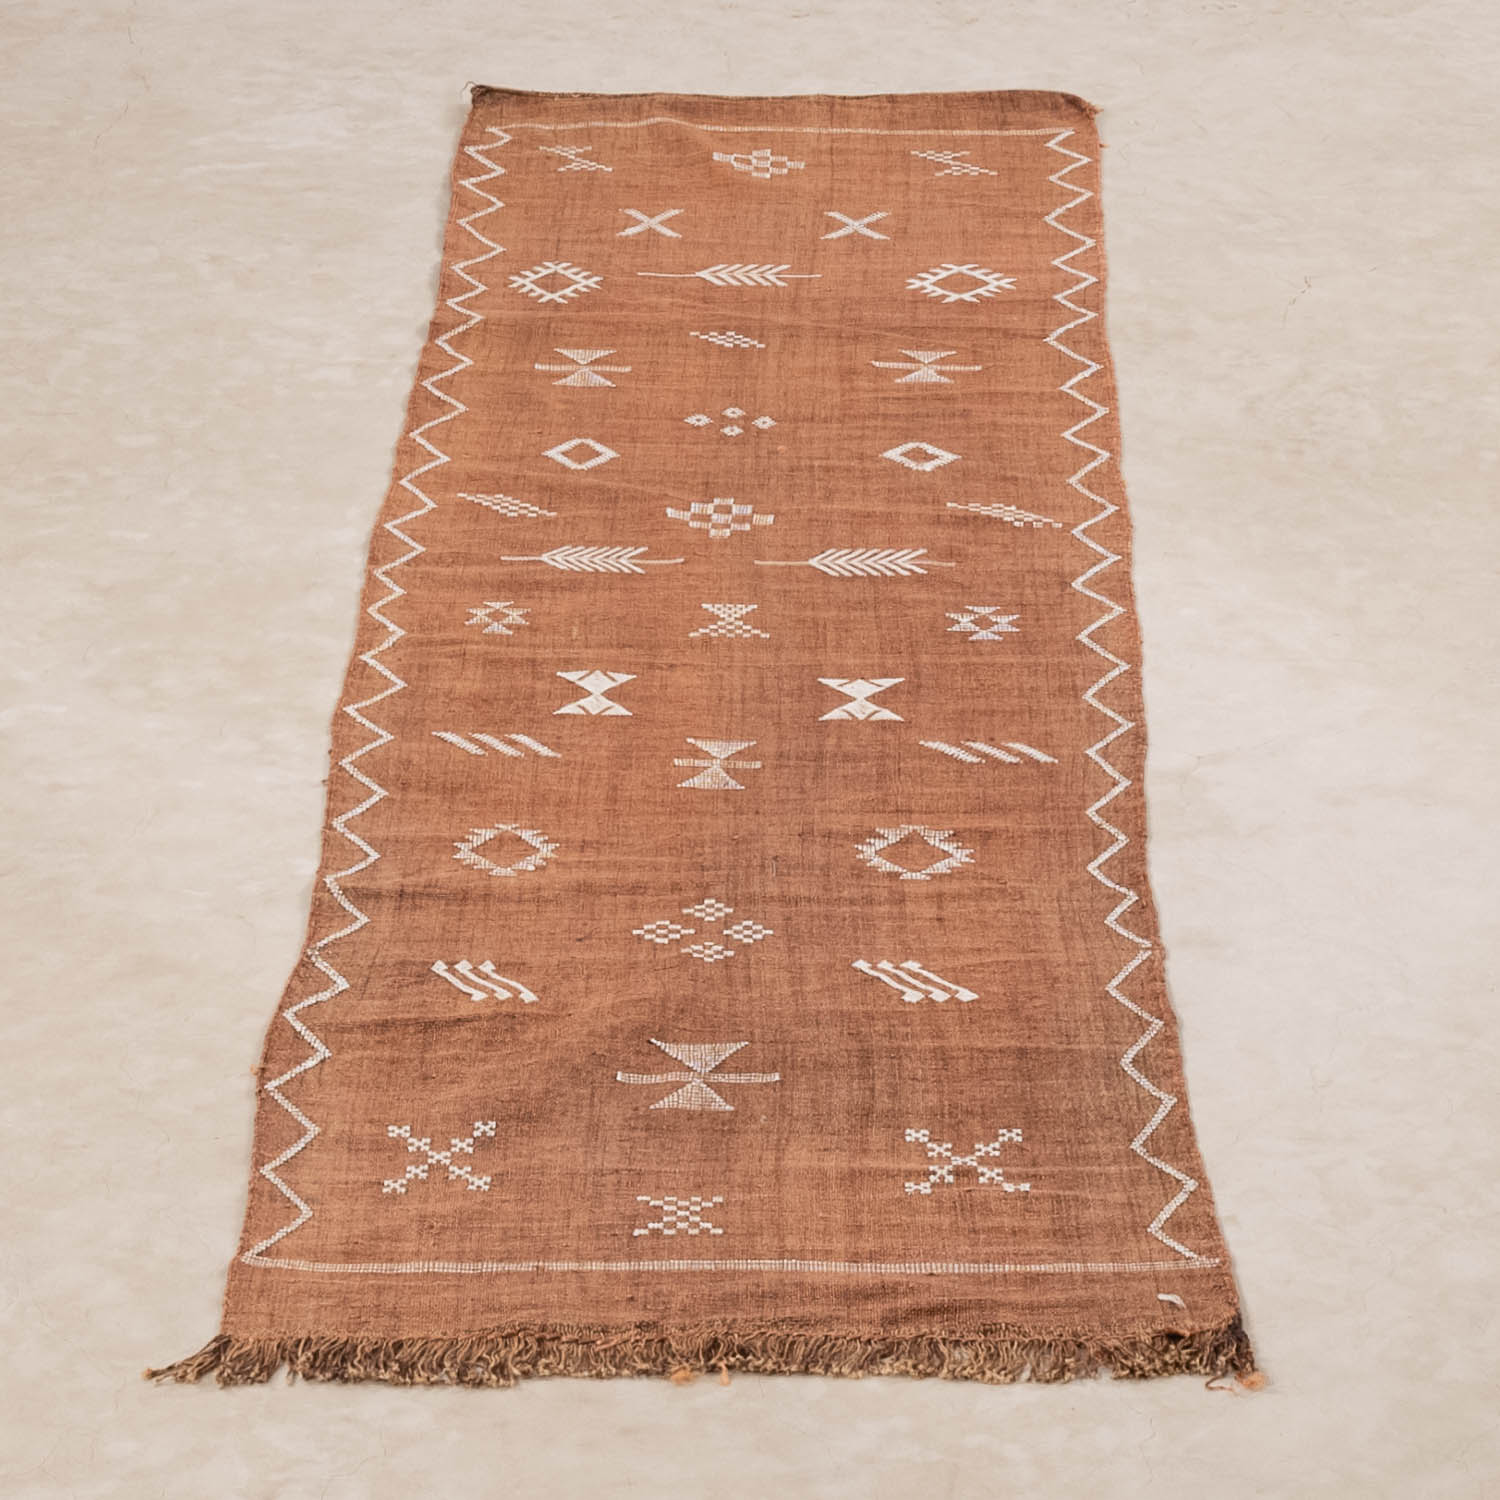 Mahira - Vegan Moroccan rug